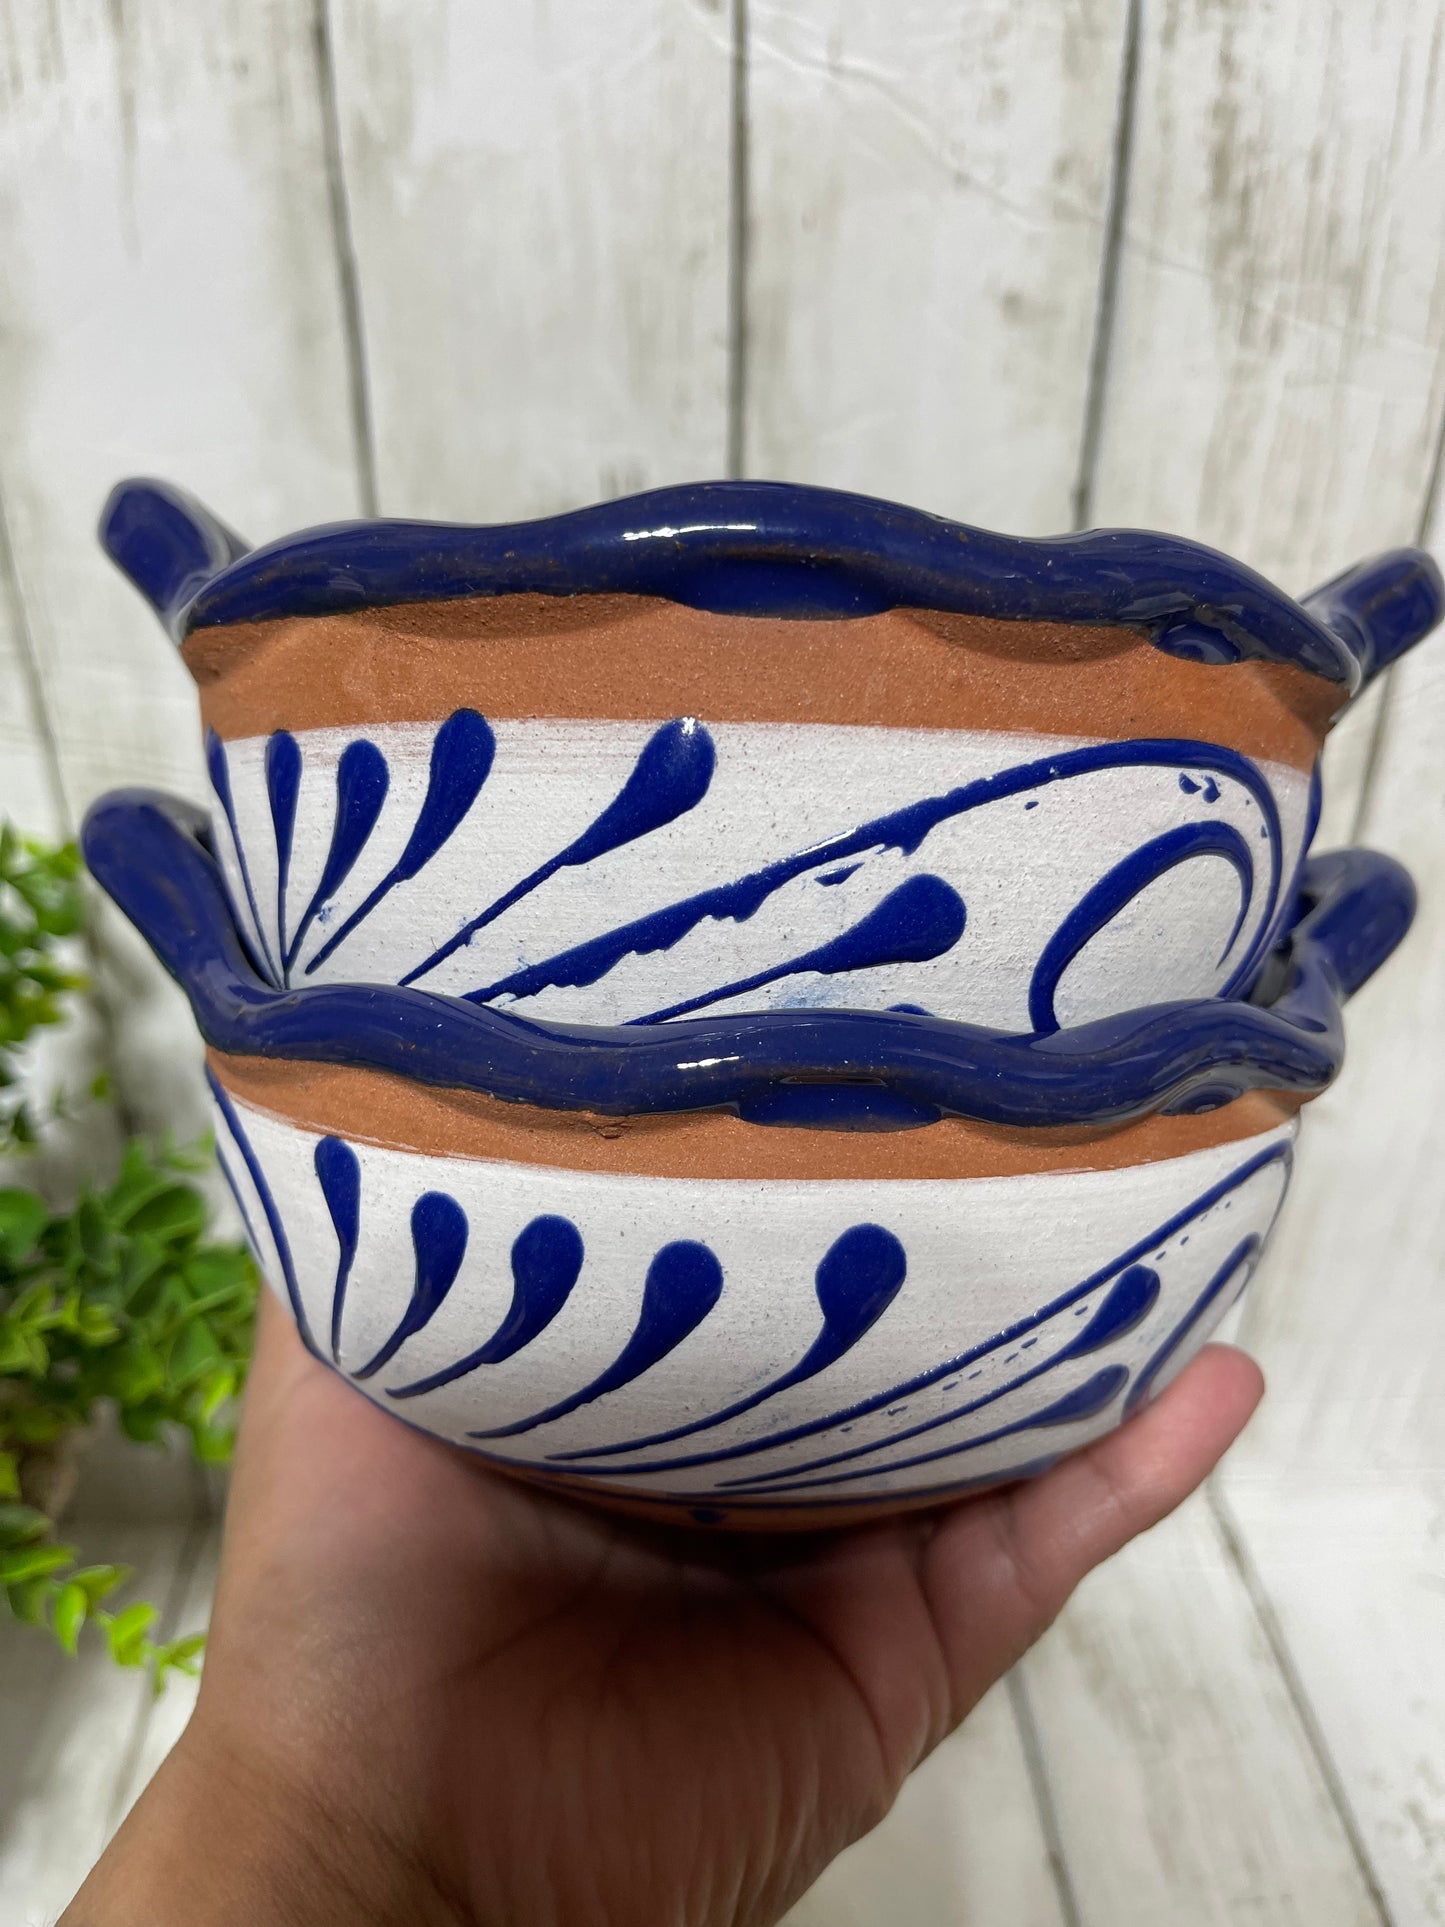 Cazuelita de barro talavera design/salser bowl de barro/salsa bowl white/navy/Mexico pottery